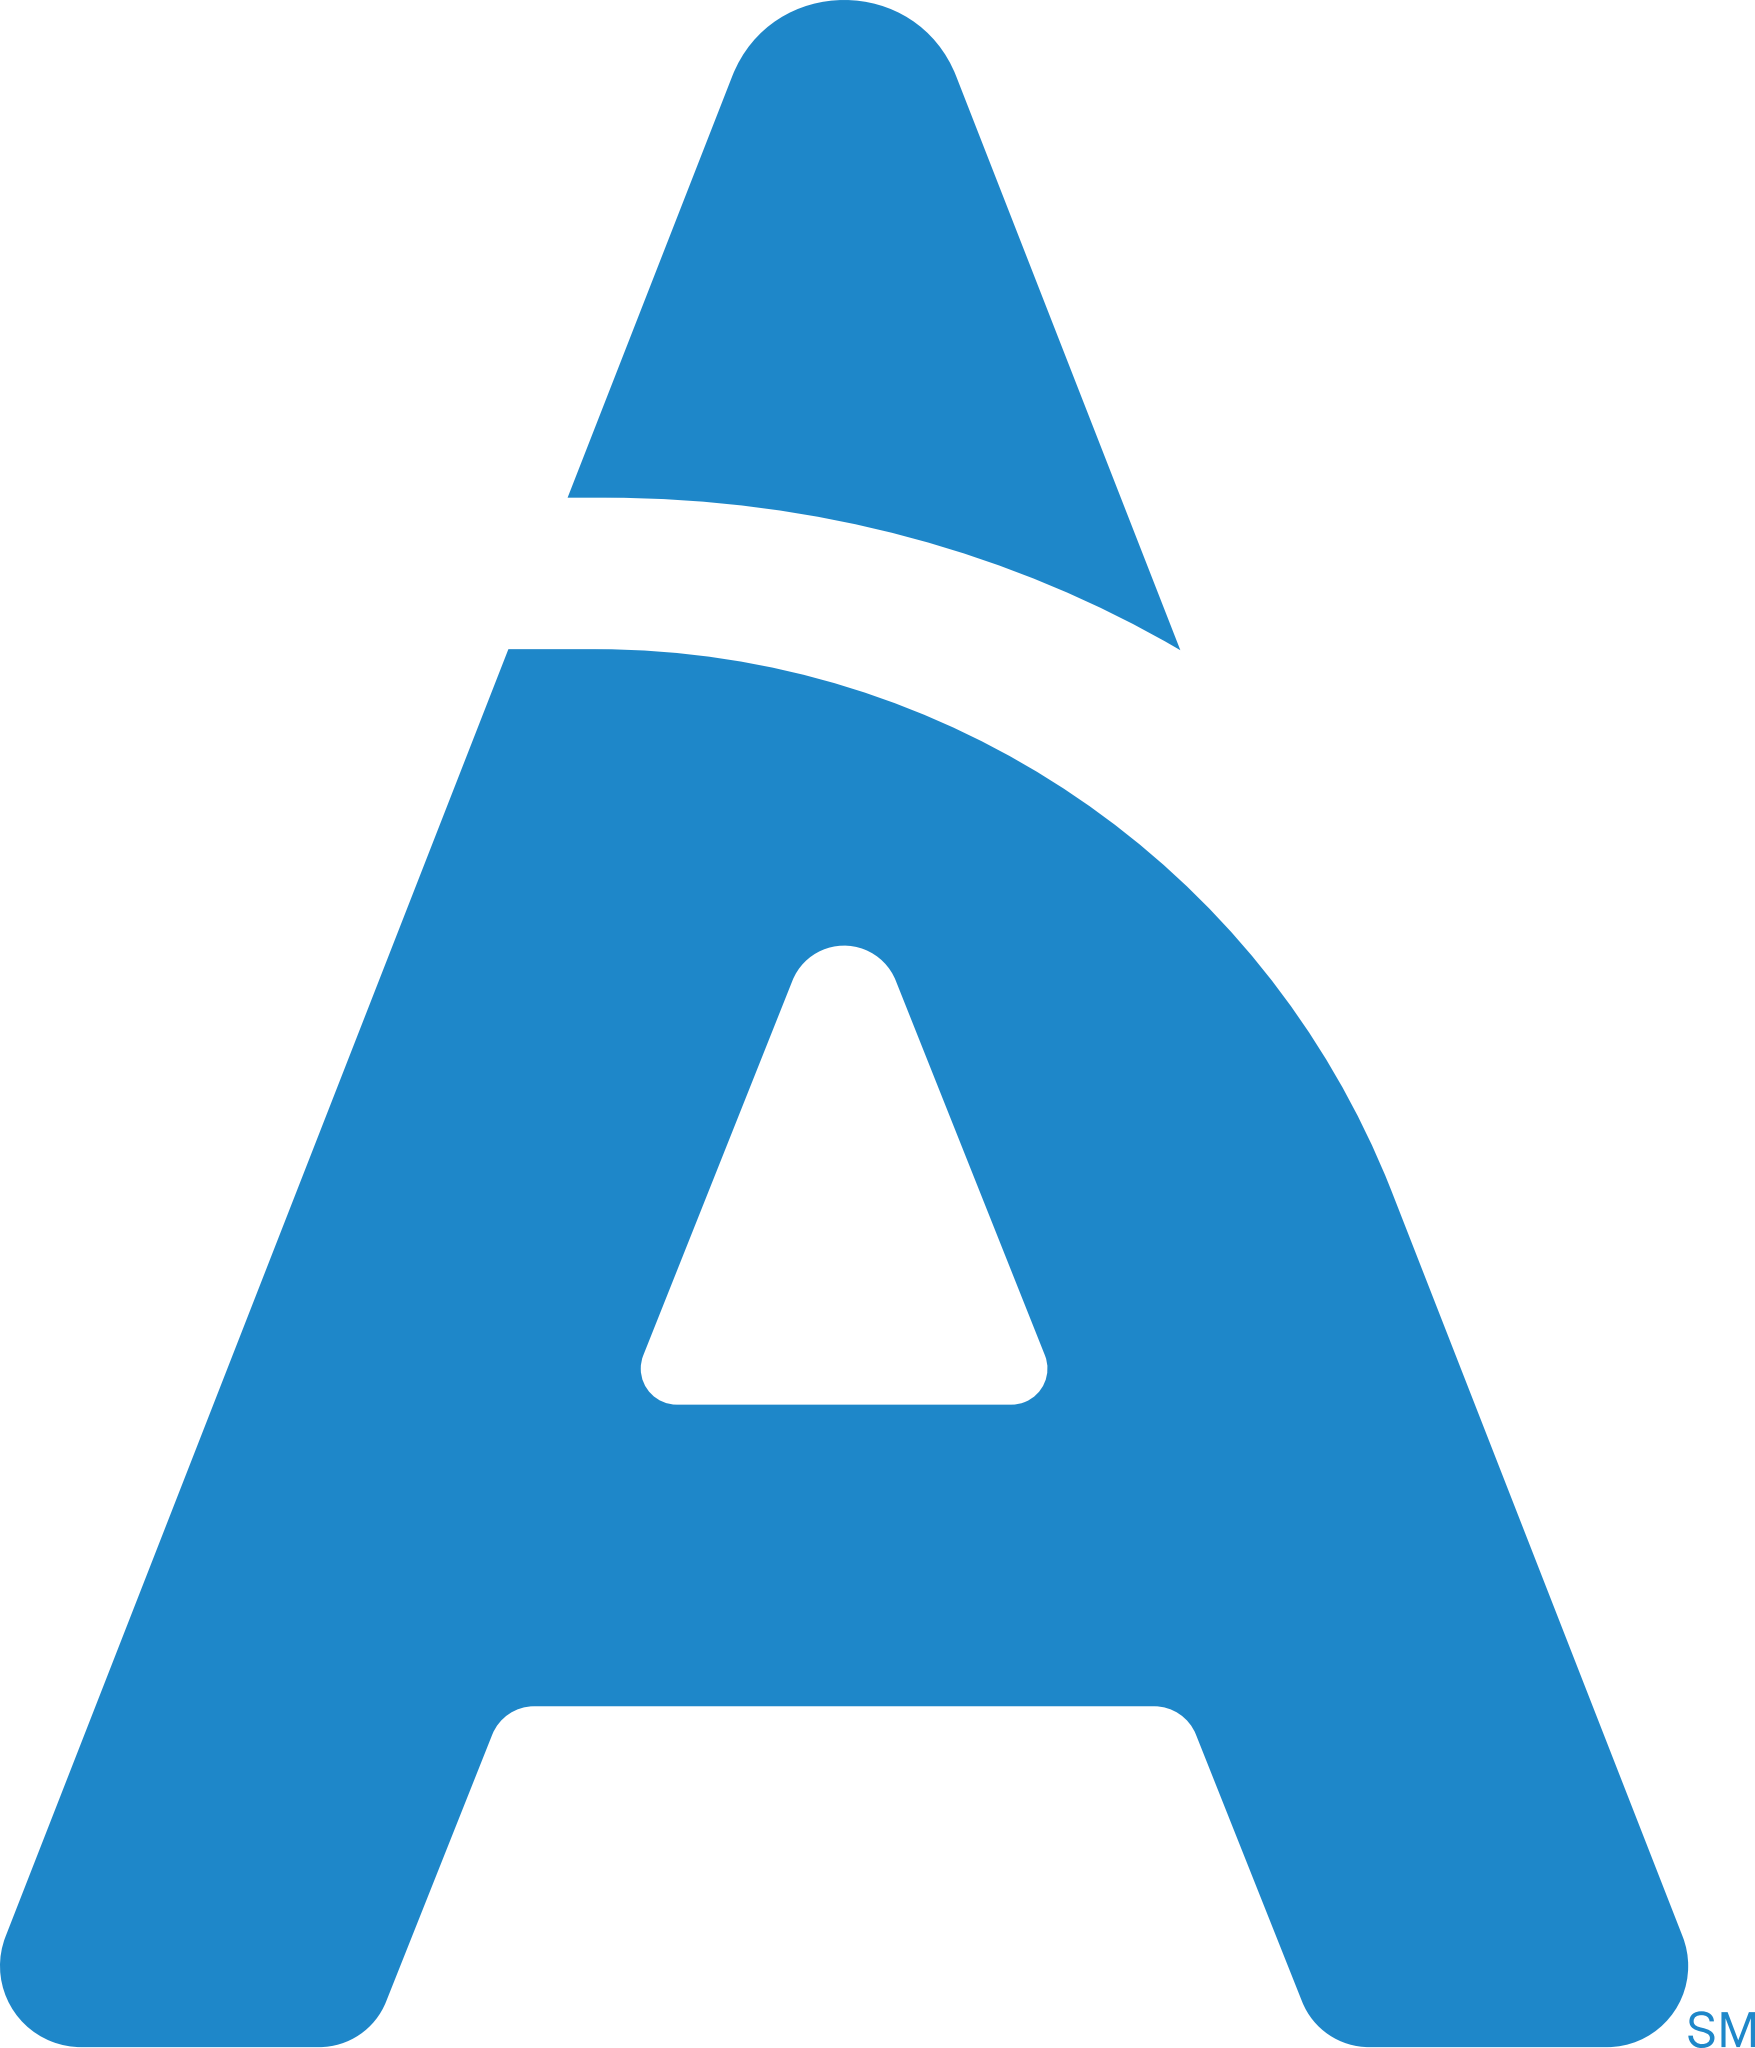 Aspen Dental Company Logo